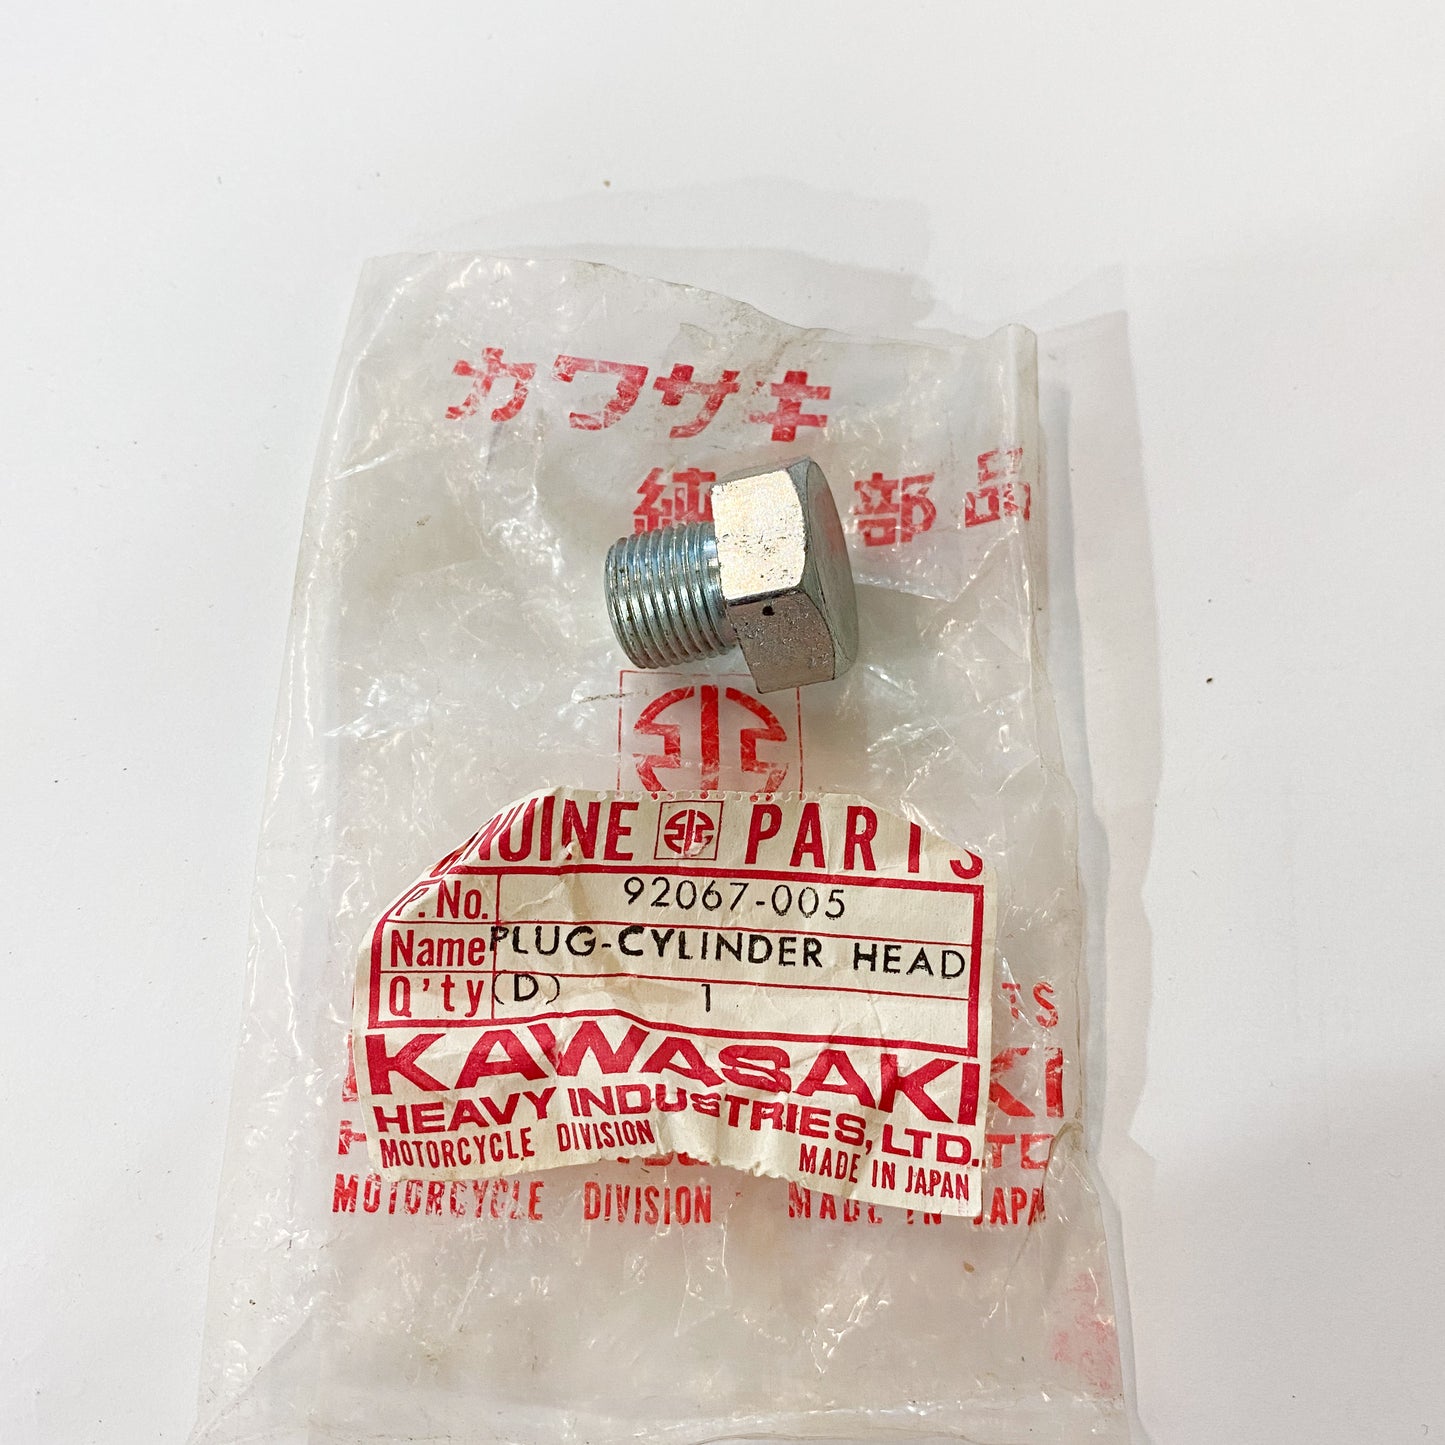 KAWASAKI PLUG-CYLINDER HEAD 92067-005